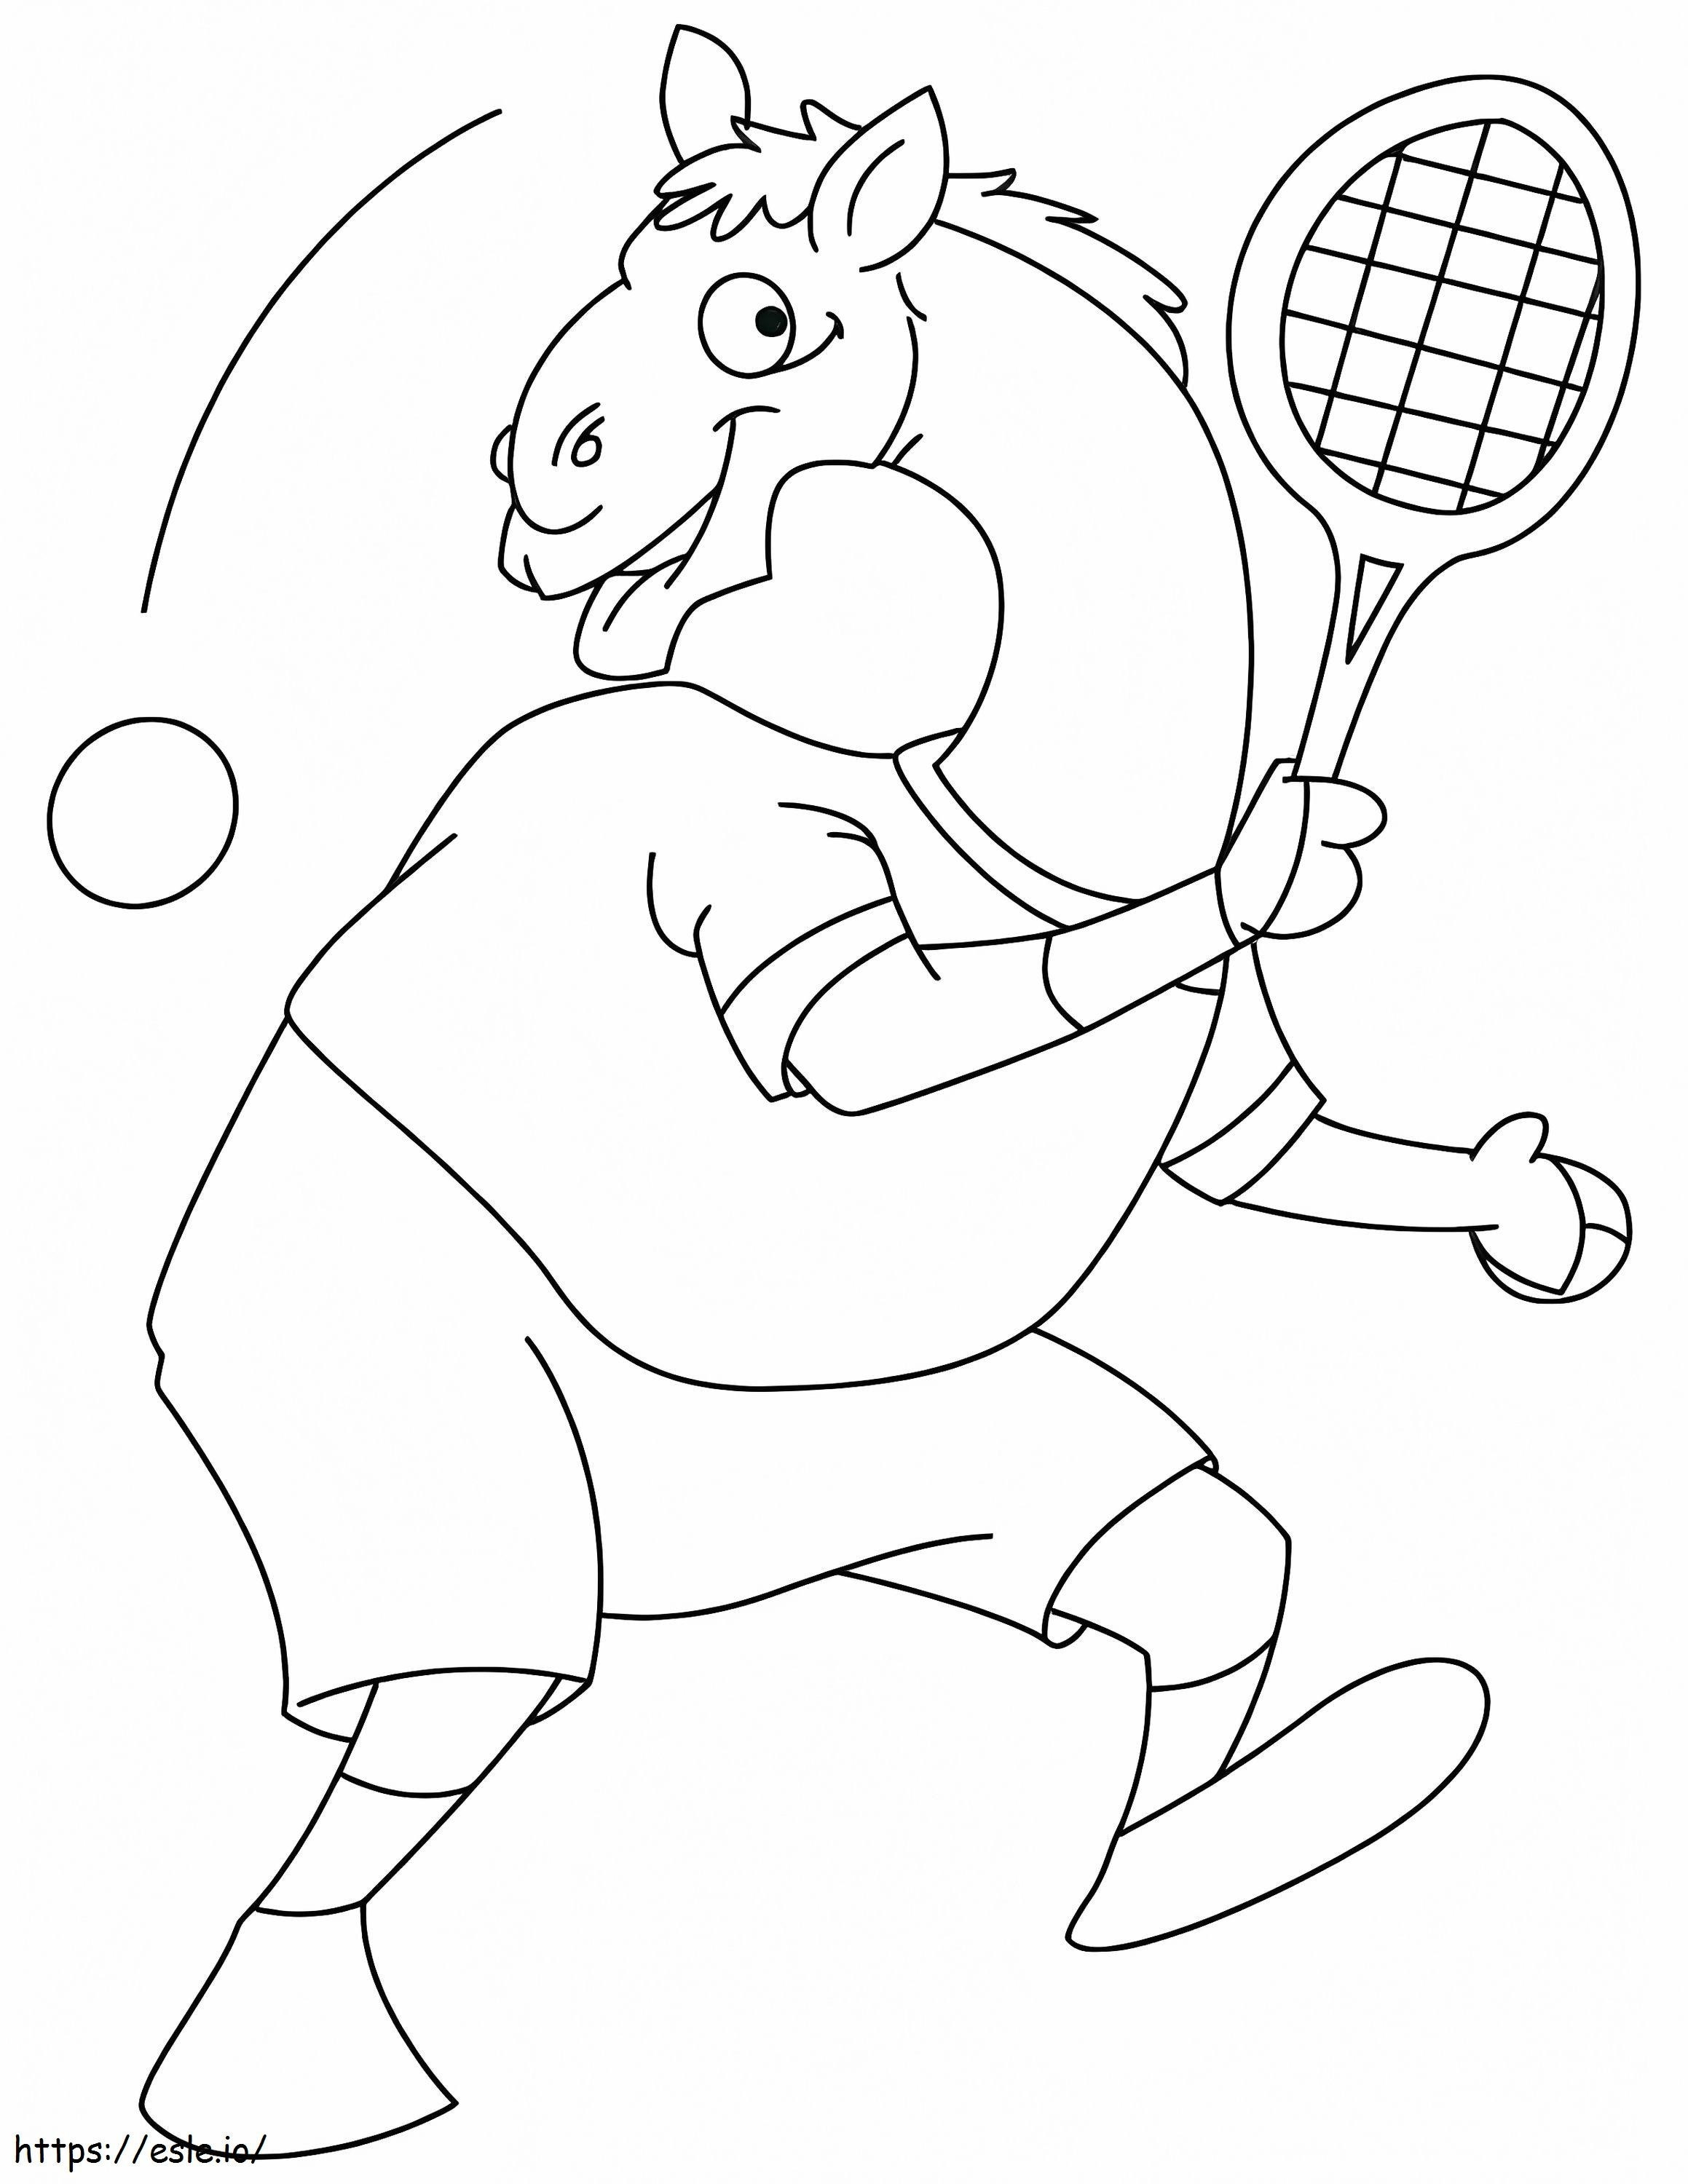 Il cammello gioca a tennis da colorare